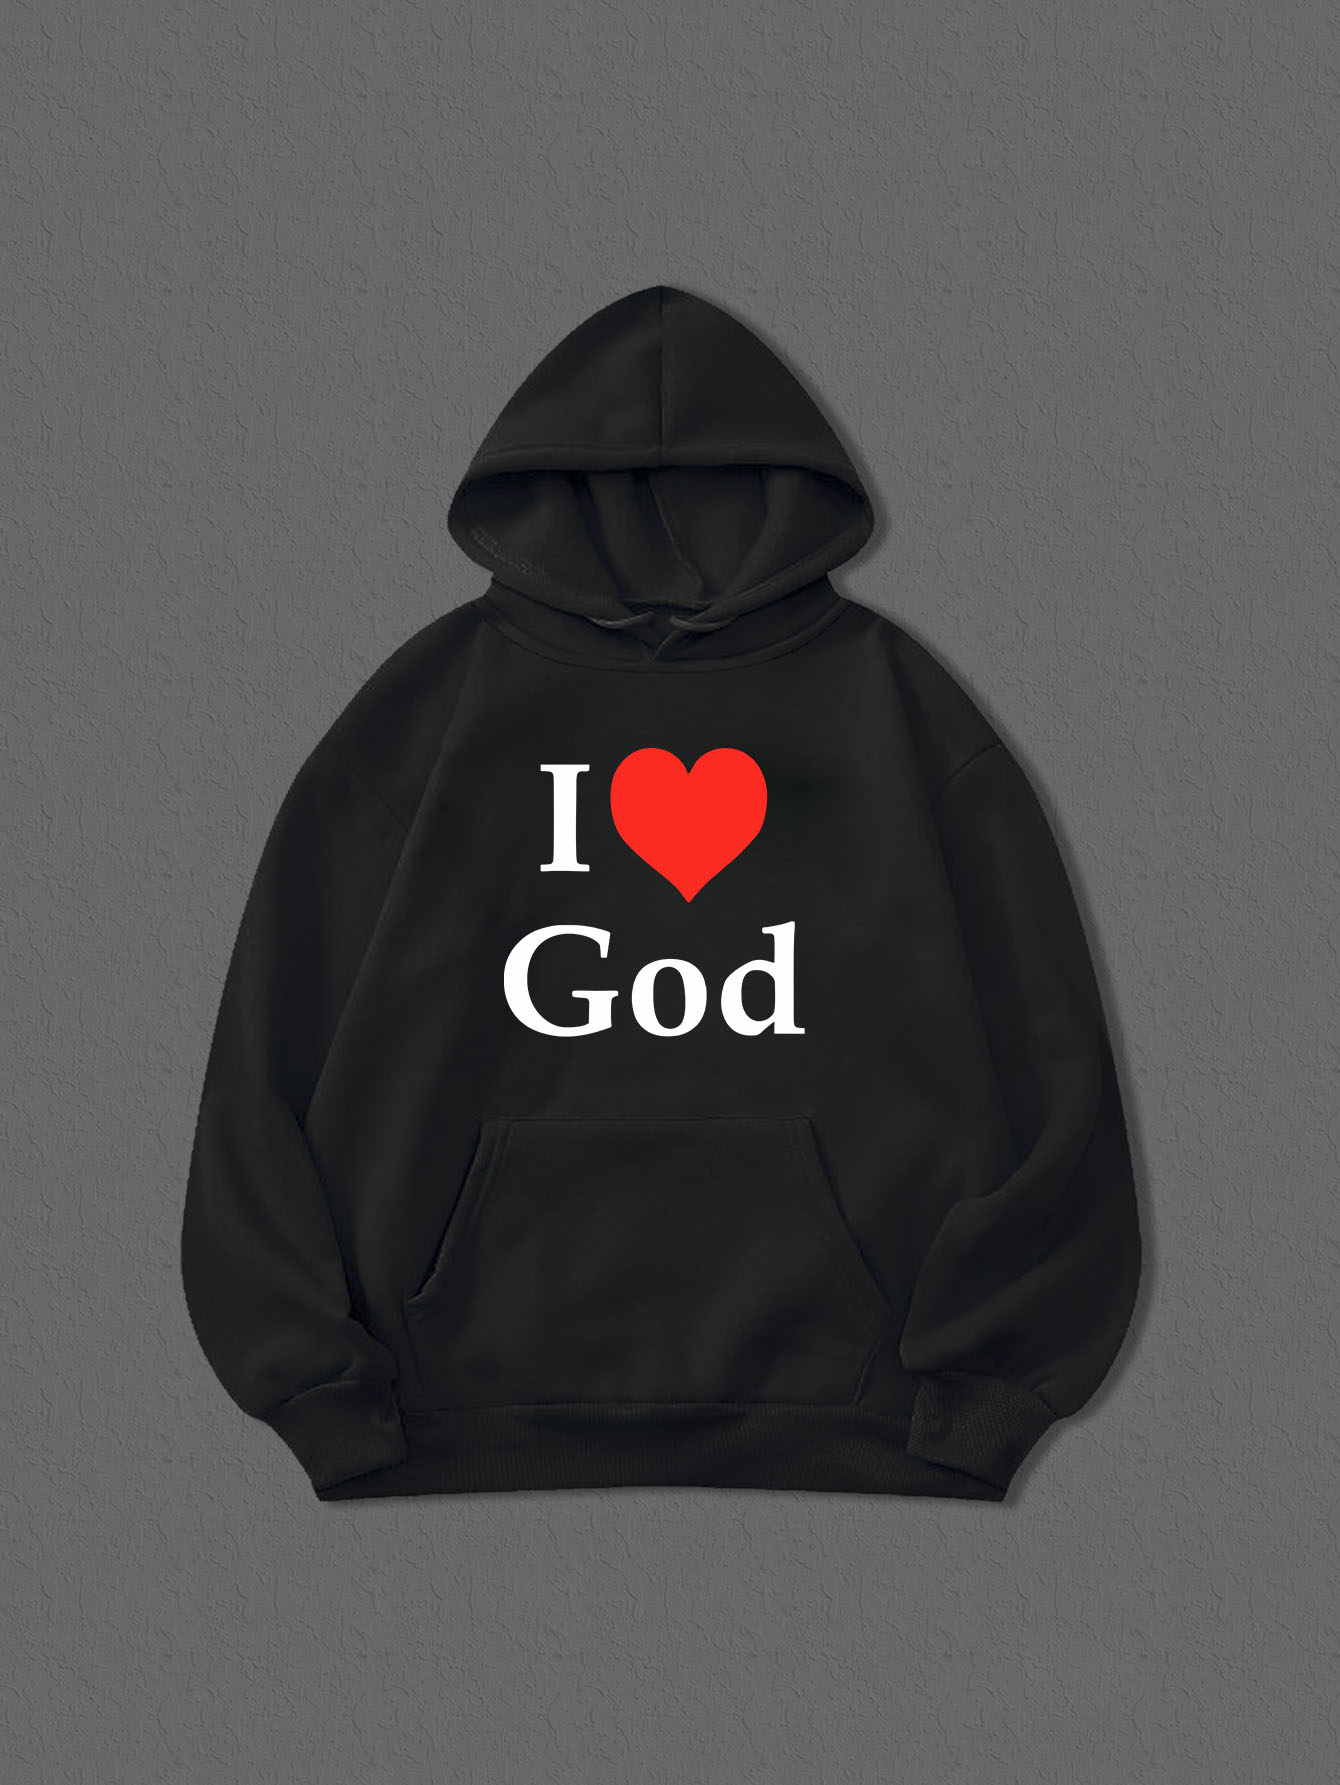 I Love God Men's Christian Pullover Hooded Sweatshirt claimedbygoddesigns